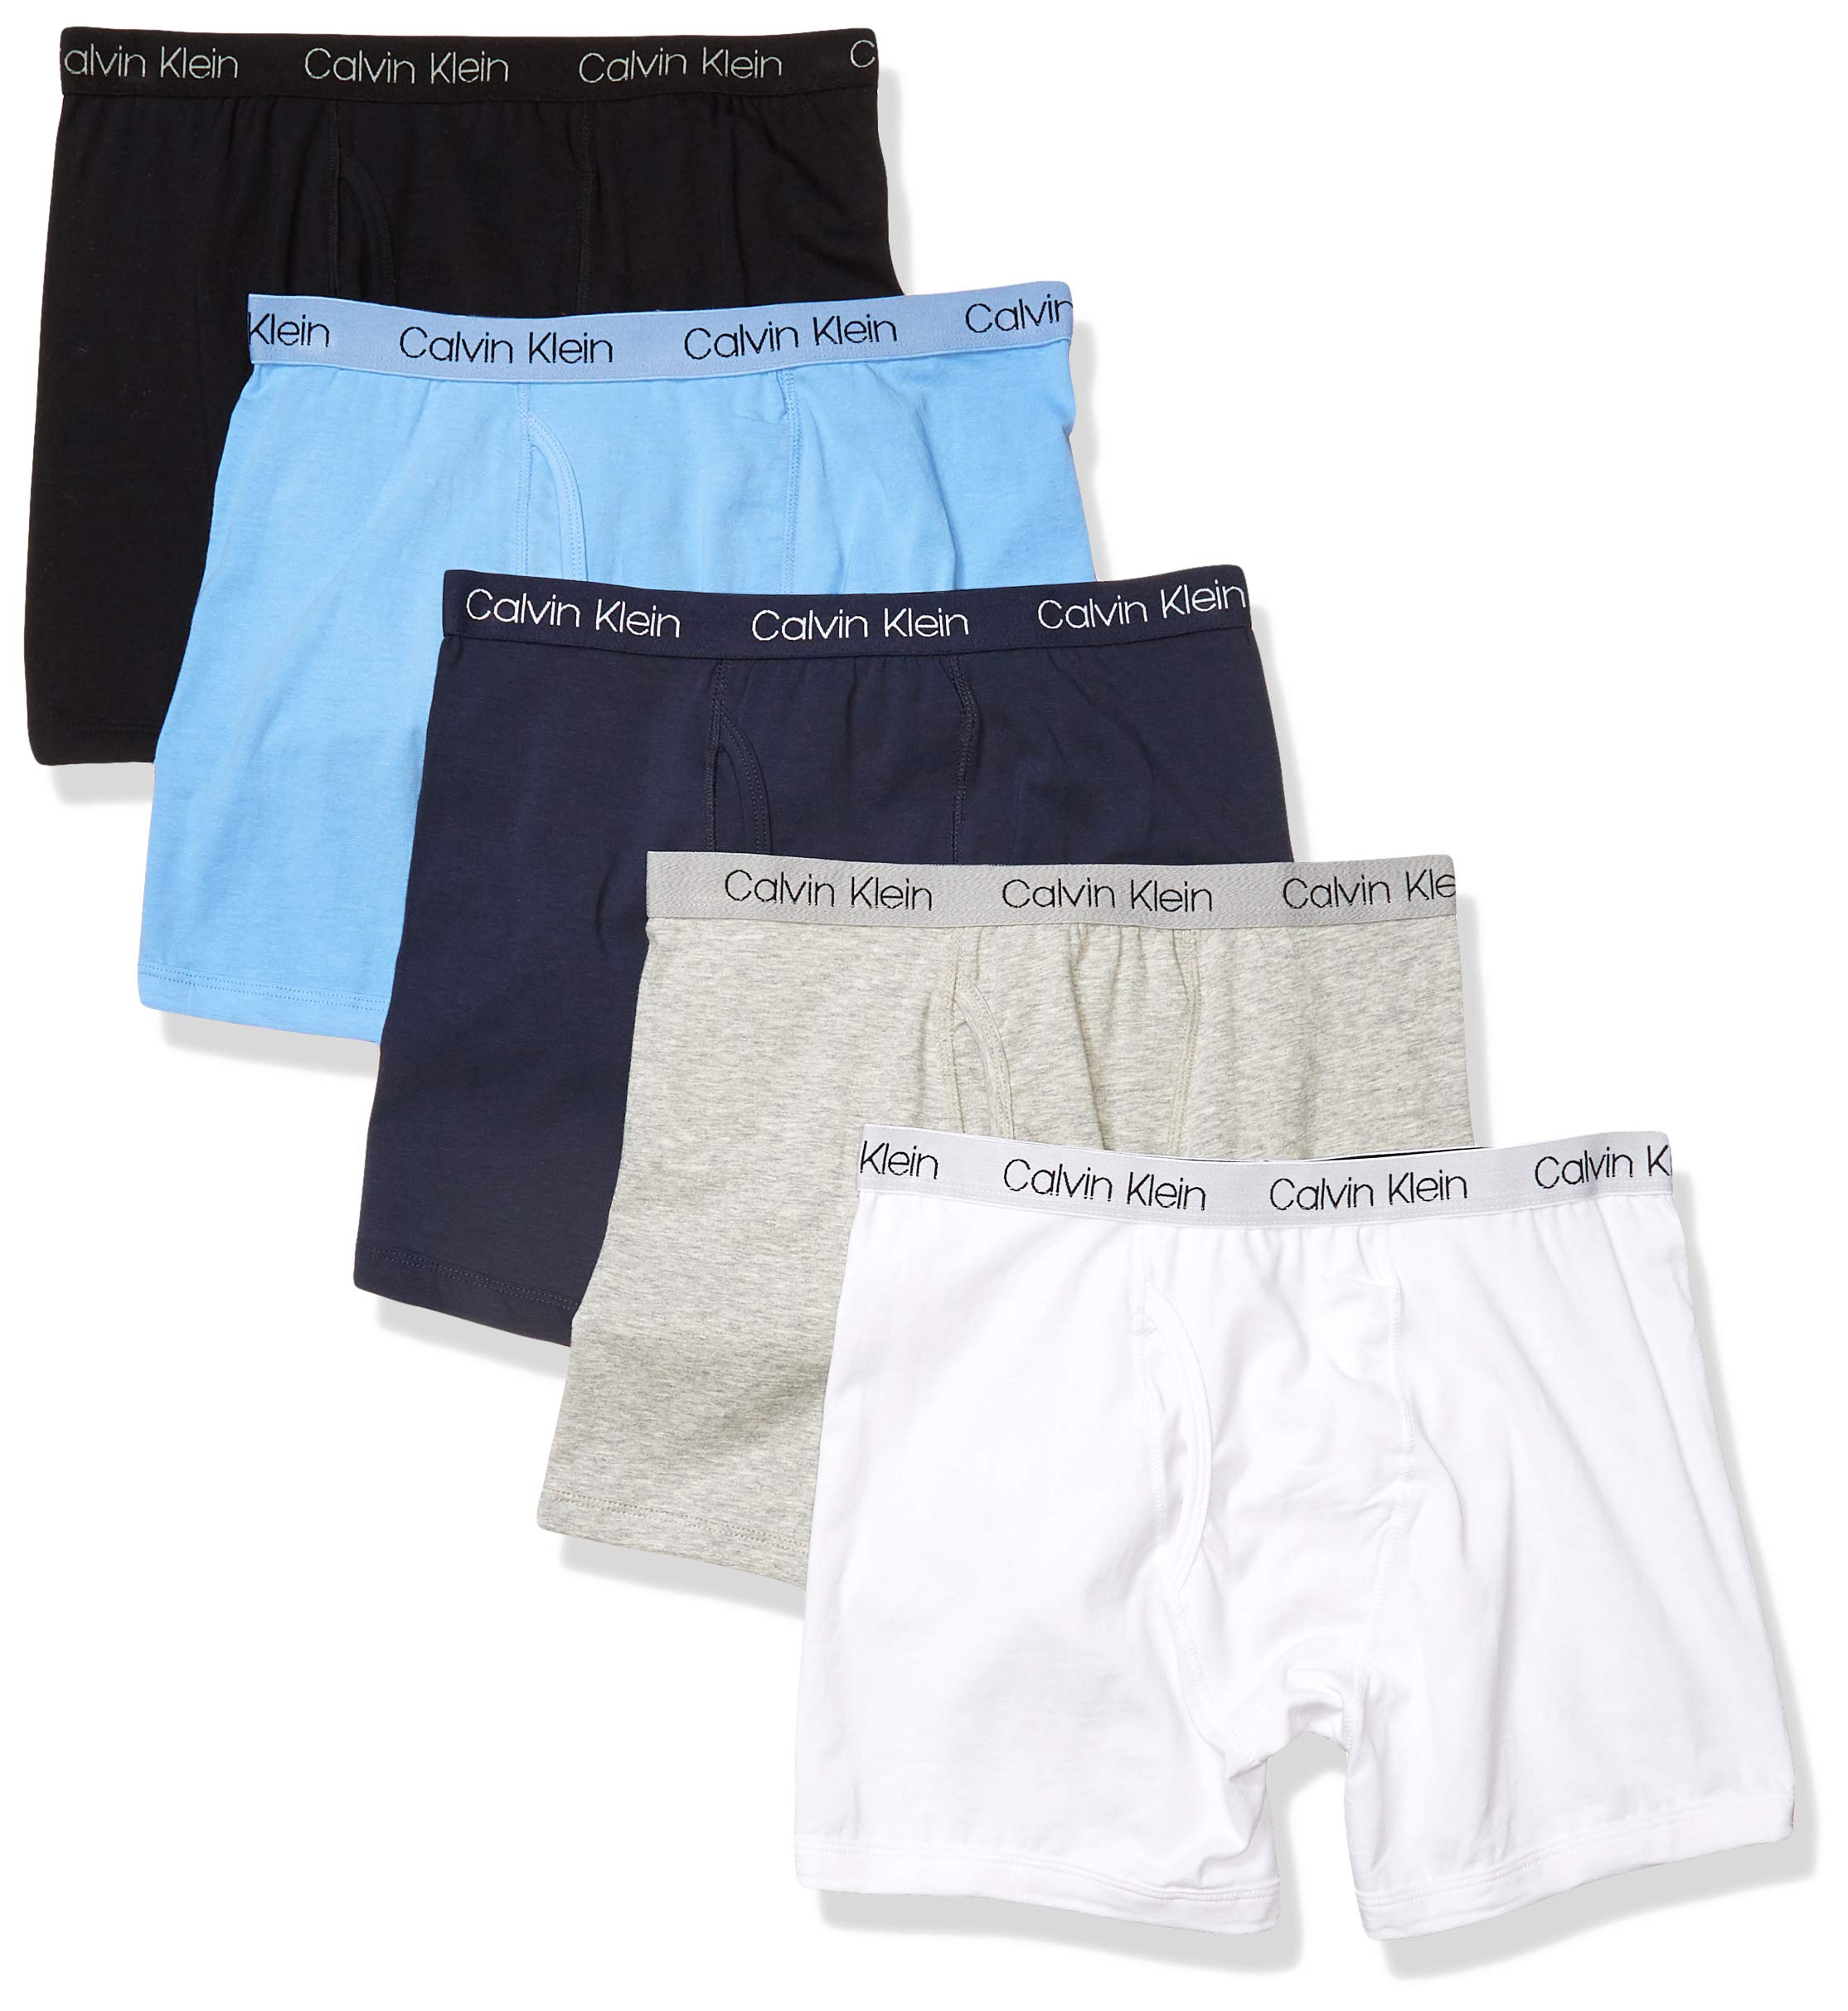 Calvin Klein Boys' Modern Cotton Assorted Boxer Briefs Underwear, Multipack